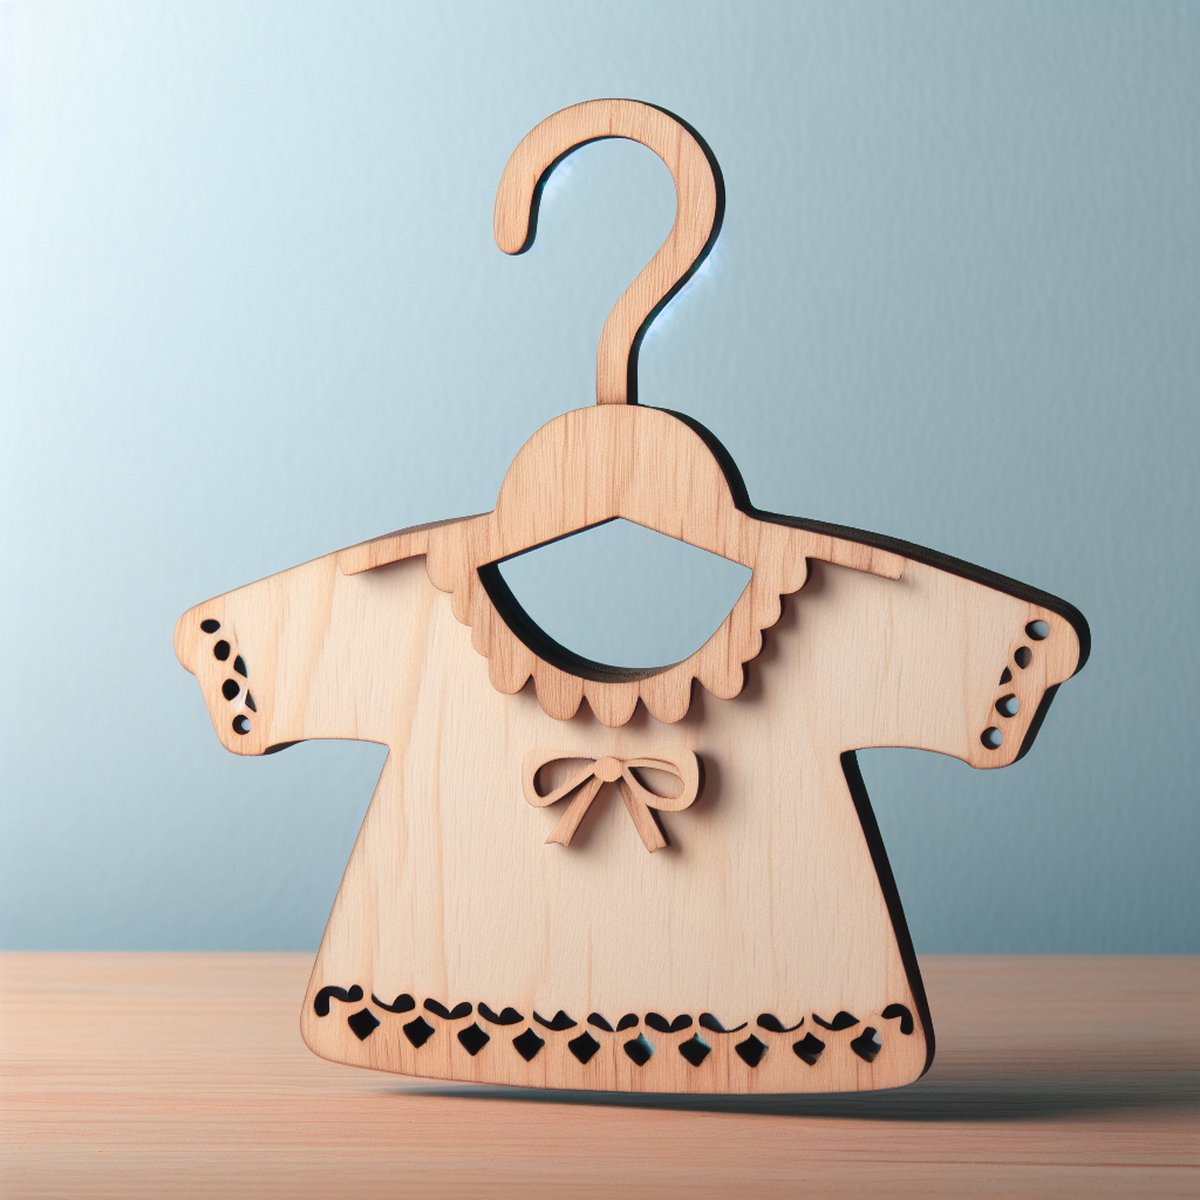 Houten babykleding hanger/ babyshowercadeaus/ sinterklaas /cadeau met een naam/baby cadeau/ houten hanger voor baby/ hanger voor kinderkleding/ garderobe-organisator/kraam cadeau/dierentuin model